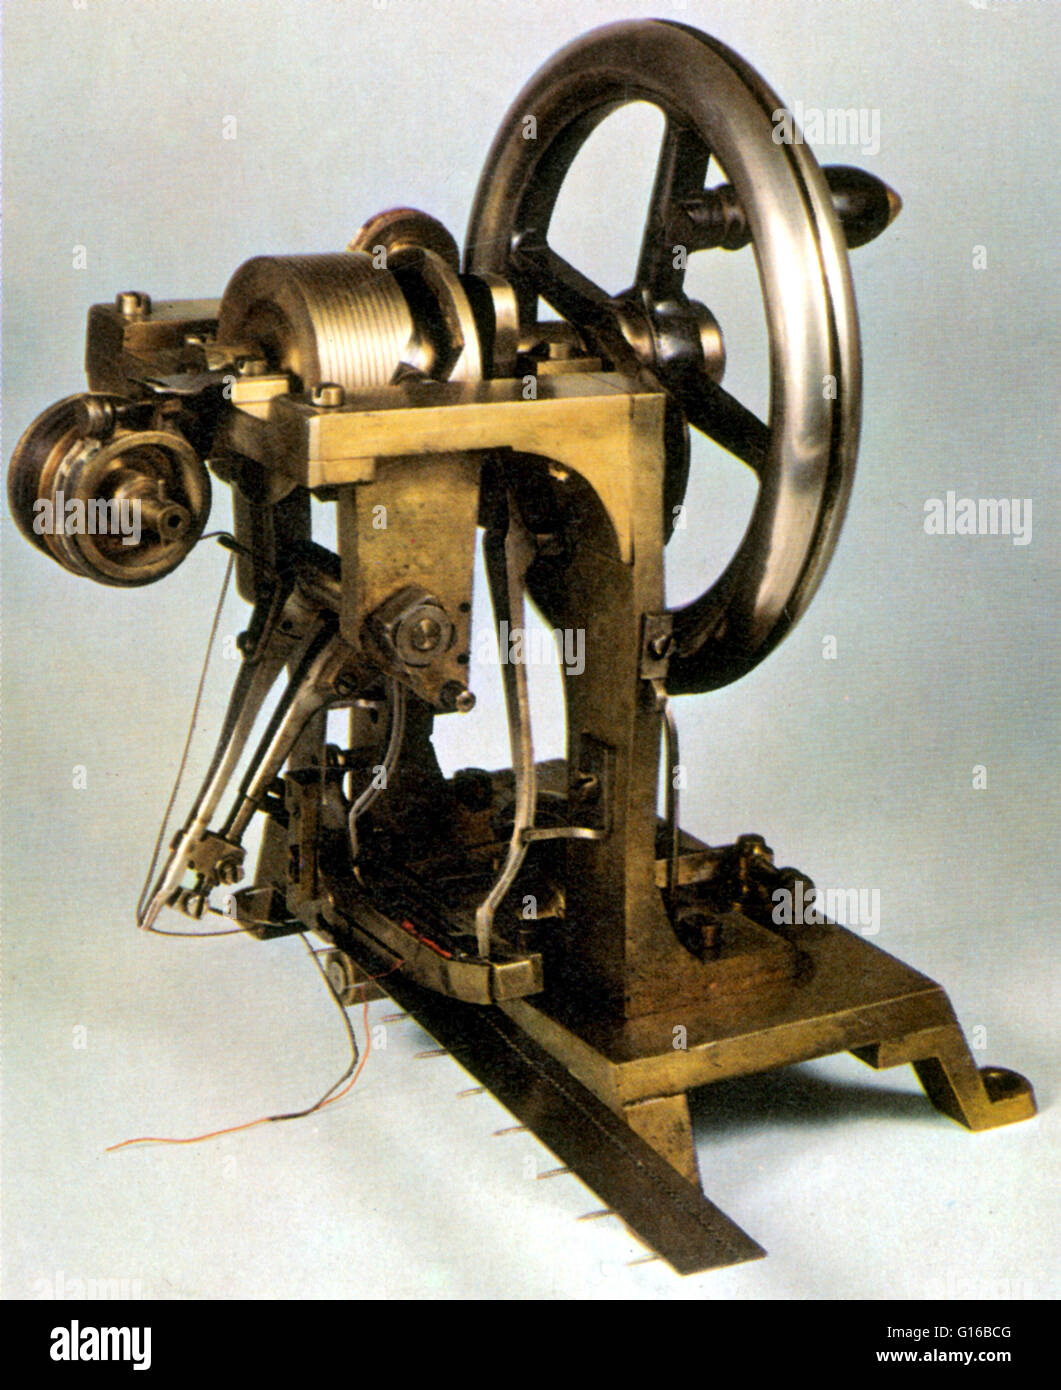 Breve historia de la máquina de coser